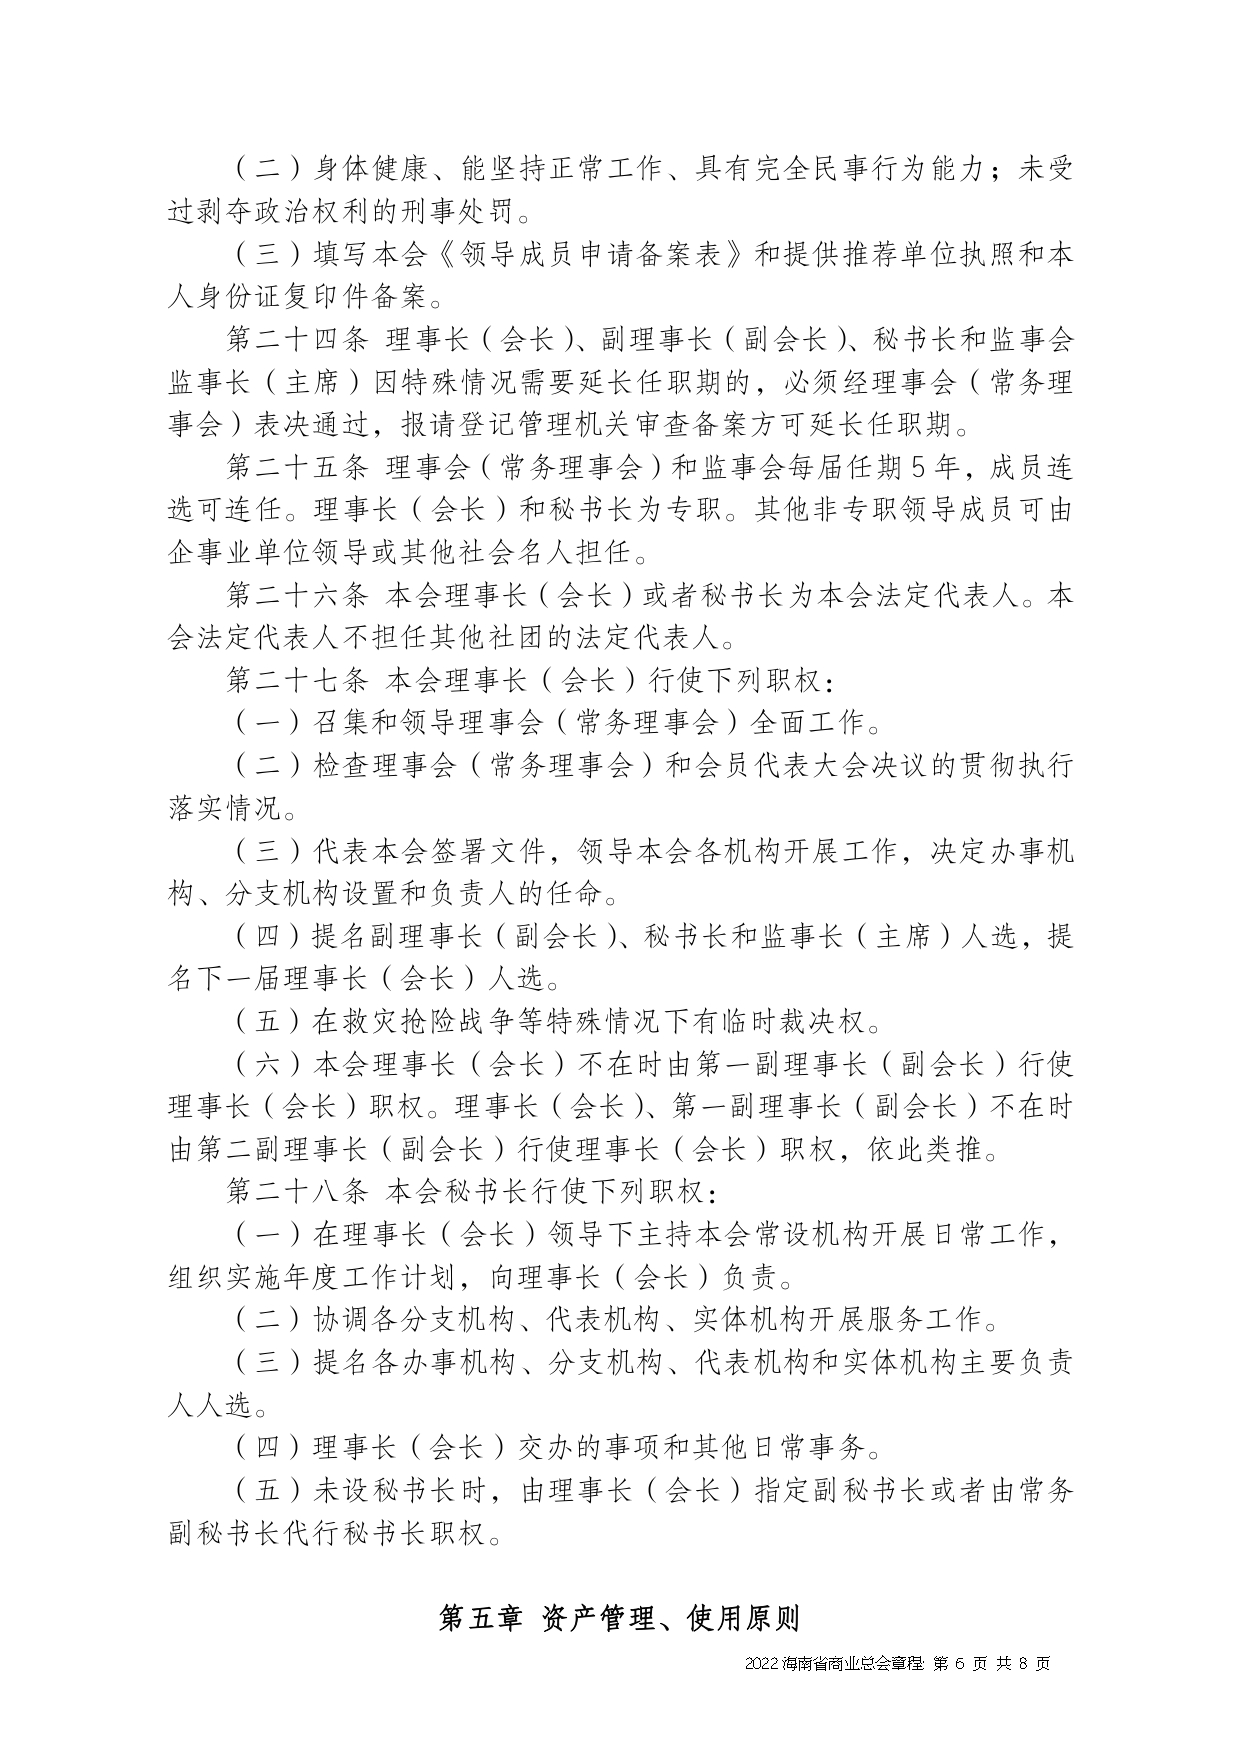 2022+海南省商业总会章程（修正版）-1_page-0006.jpg